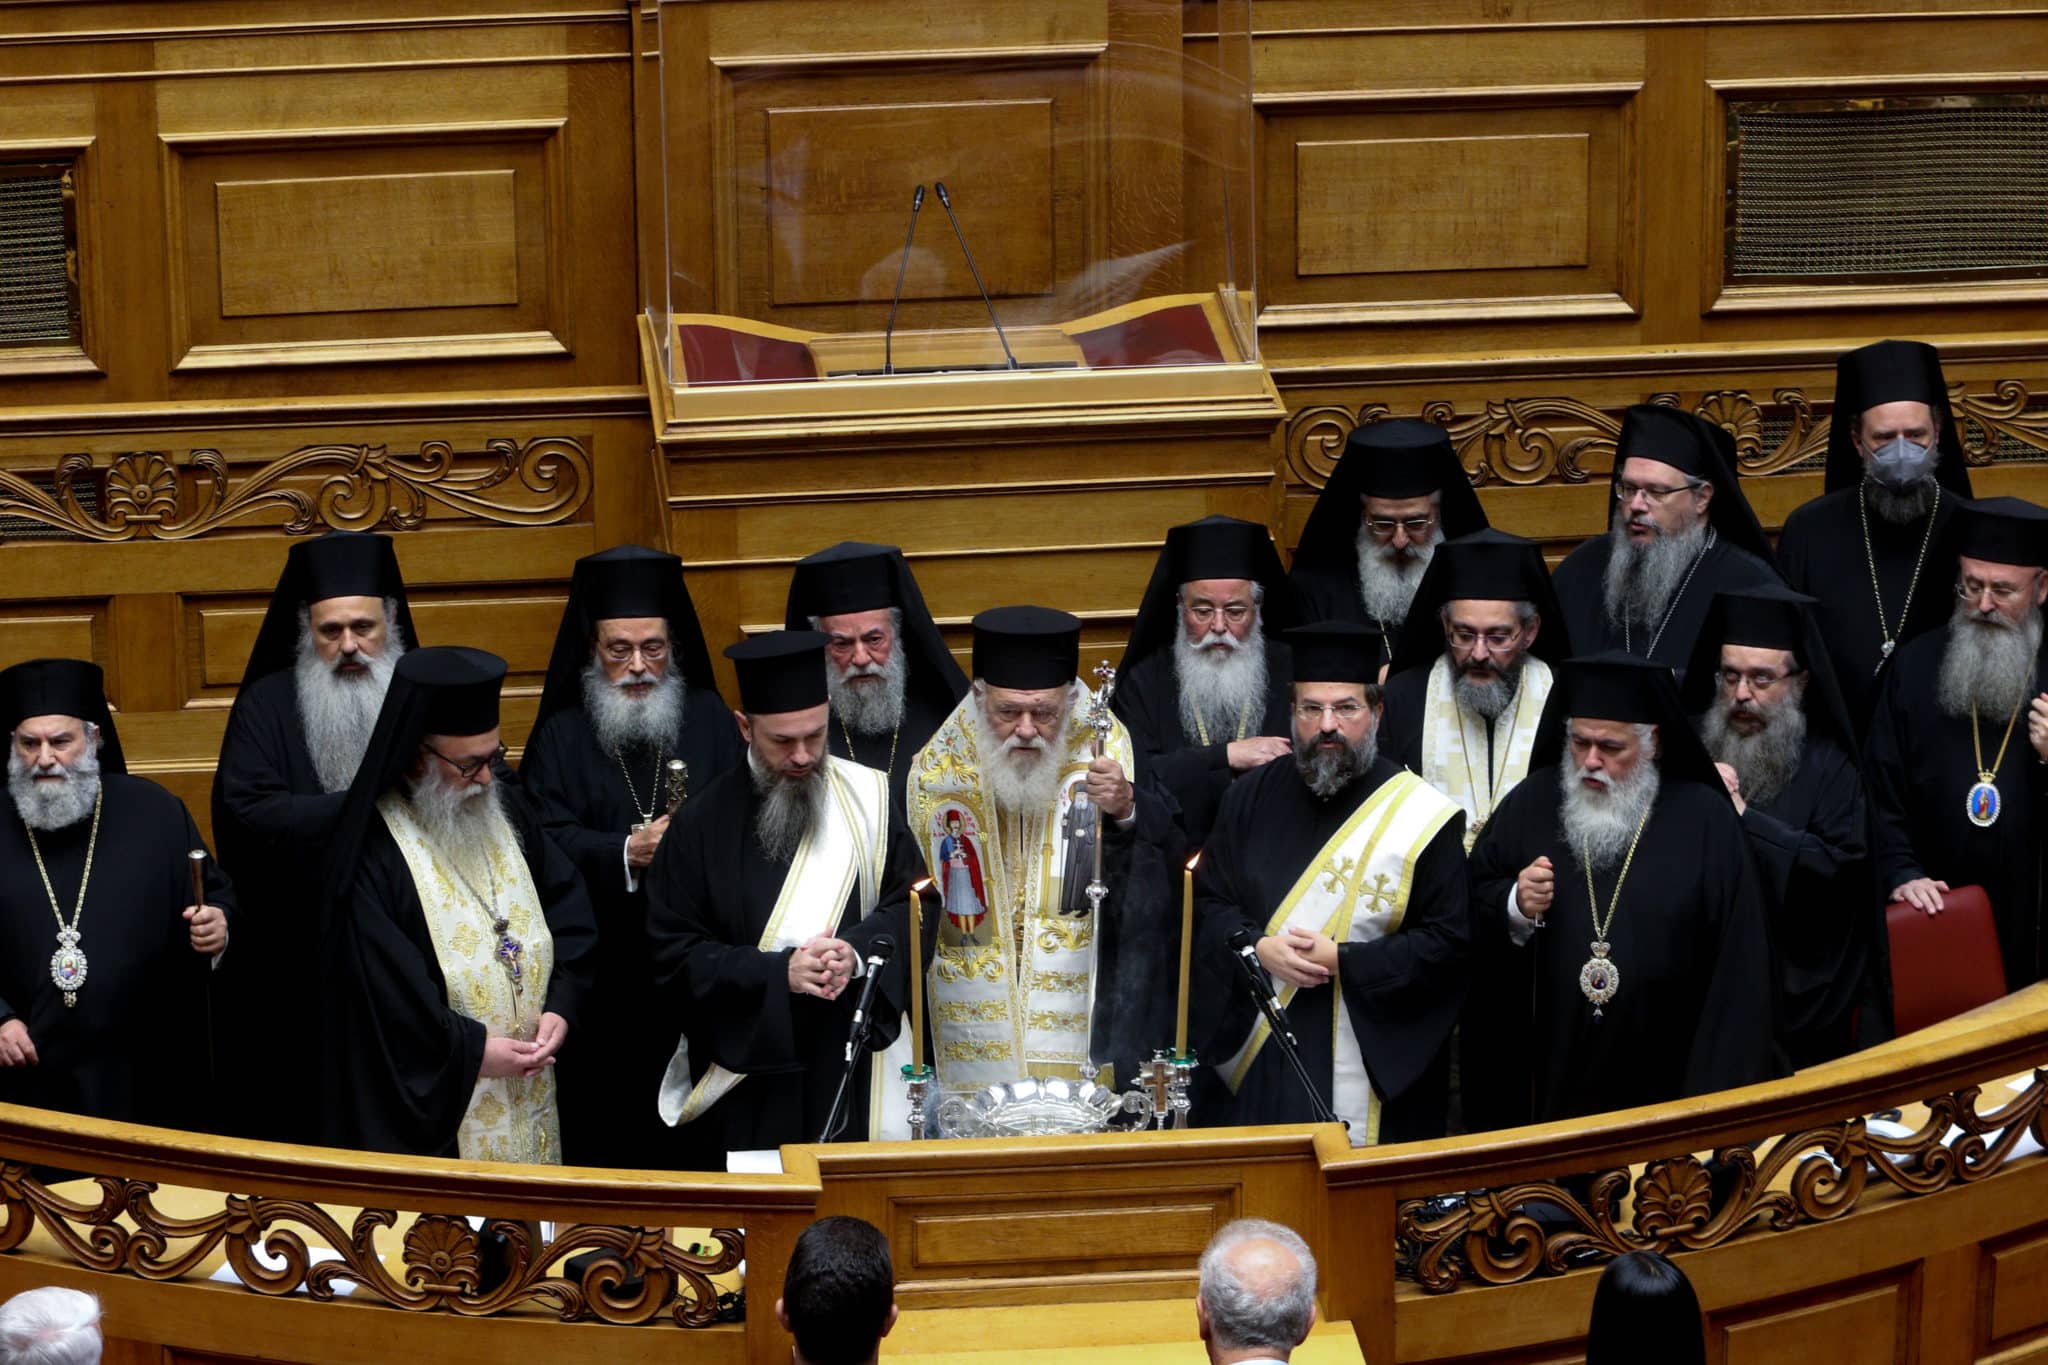 L’archevêque d’Athènes Jérôme a célébré la bénédiction de l’eau au Parlement hellénique pour le début de la nouvelle législature￼